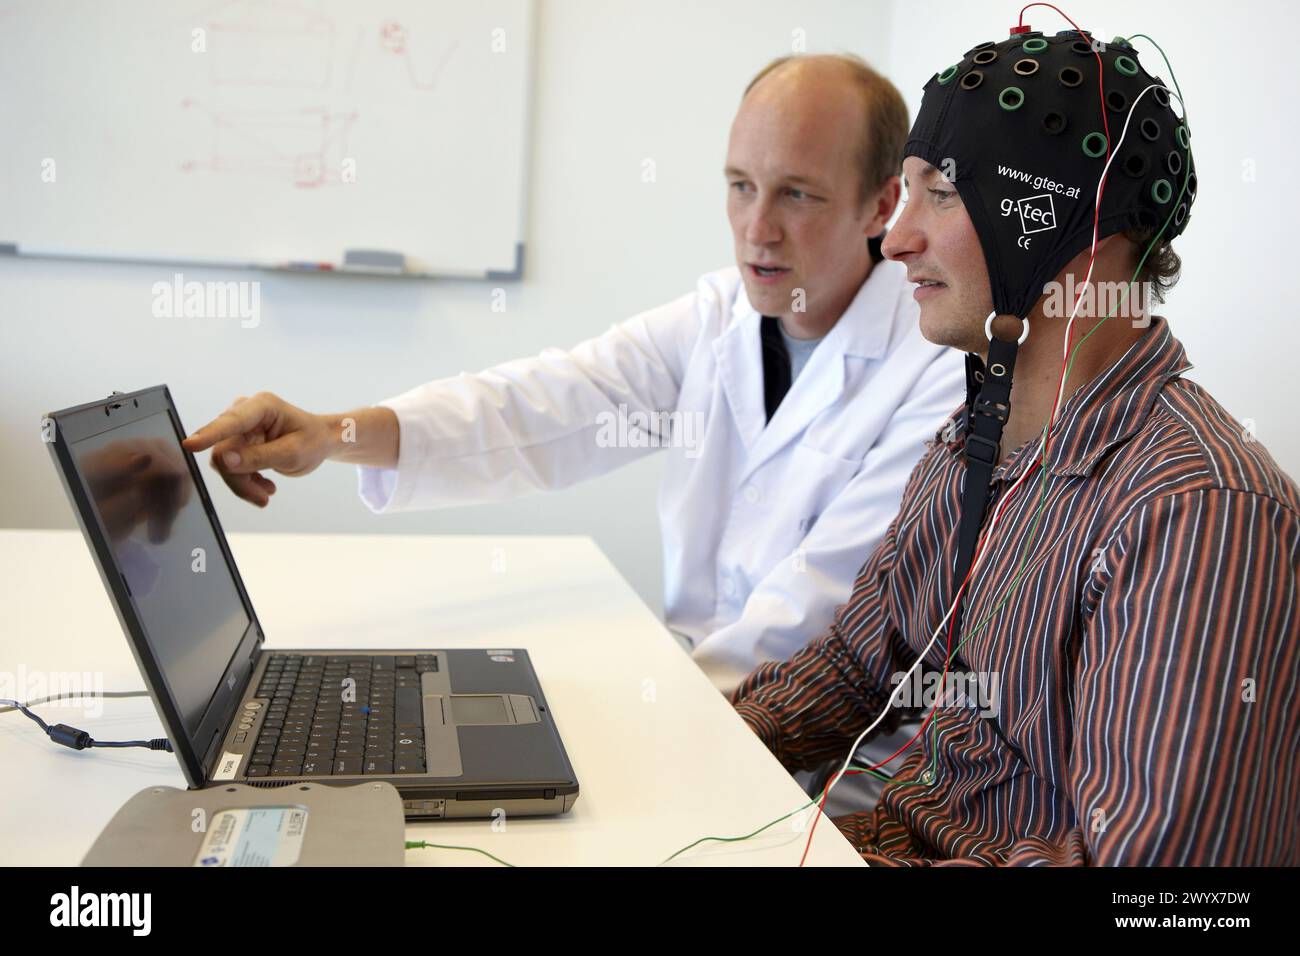 Testen eines BCI (Brain-Computer Interface), entwickelt von Forschern der Abteilung Gesundheit und Lebensqualität, FIK-Technologieforschungsprogramm für ältere und behinderte Menschen. Fatronik-Tecnalia, Forschungs- und Technologiezentrum, Donostia, Baskenland, Spanien. Stockfoto